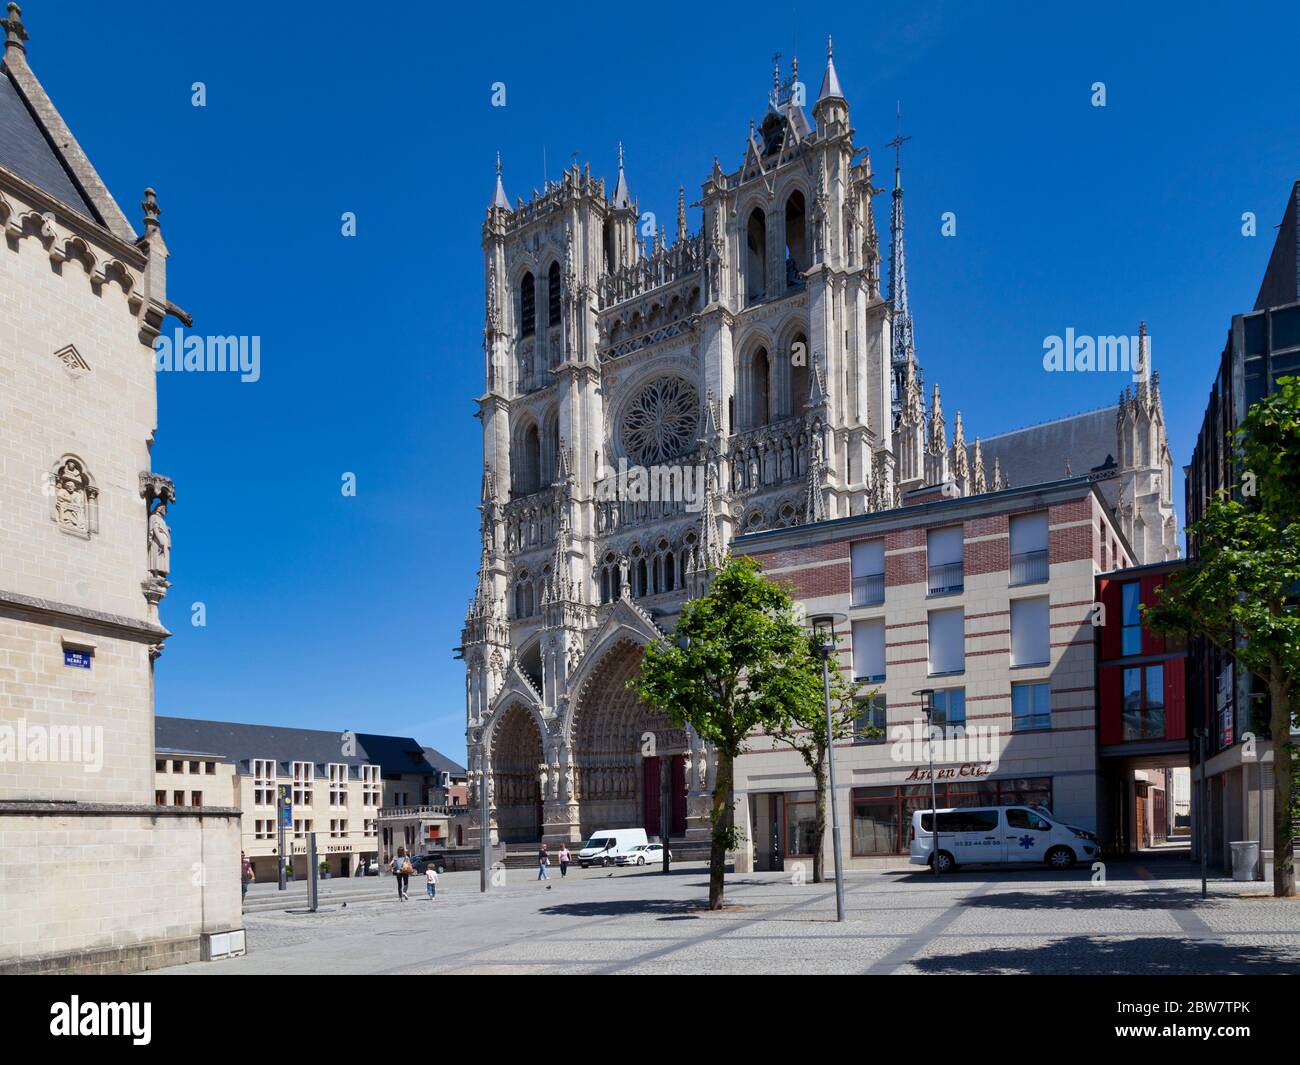 Amiens, Frankreich - Mai 30 2020: Die Kathedrale Basilika unserer Lieben Frau von Amiens (Französisch: Basilique Cathédrale Notre-Dame d'Amiens). Stockfoto